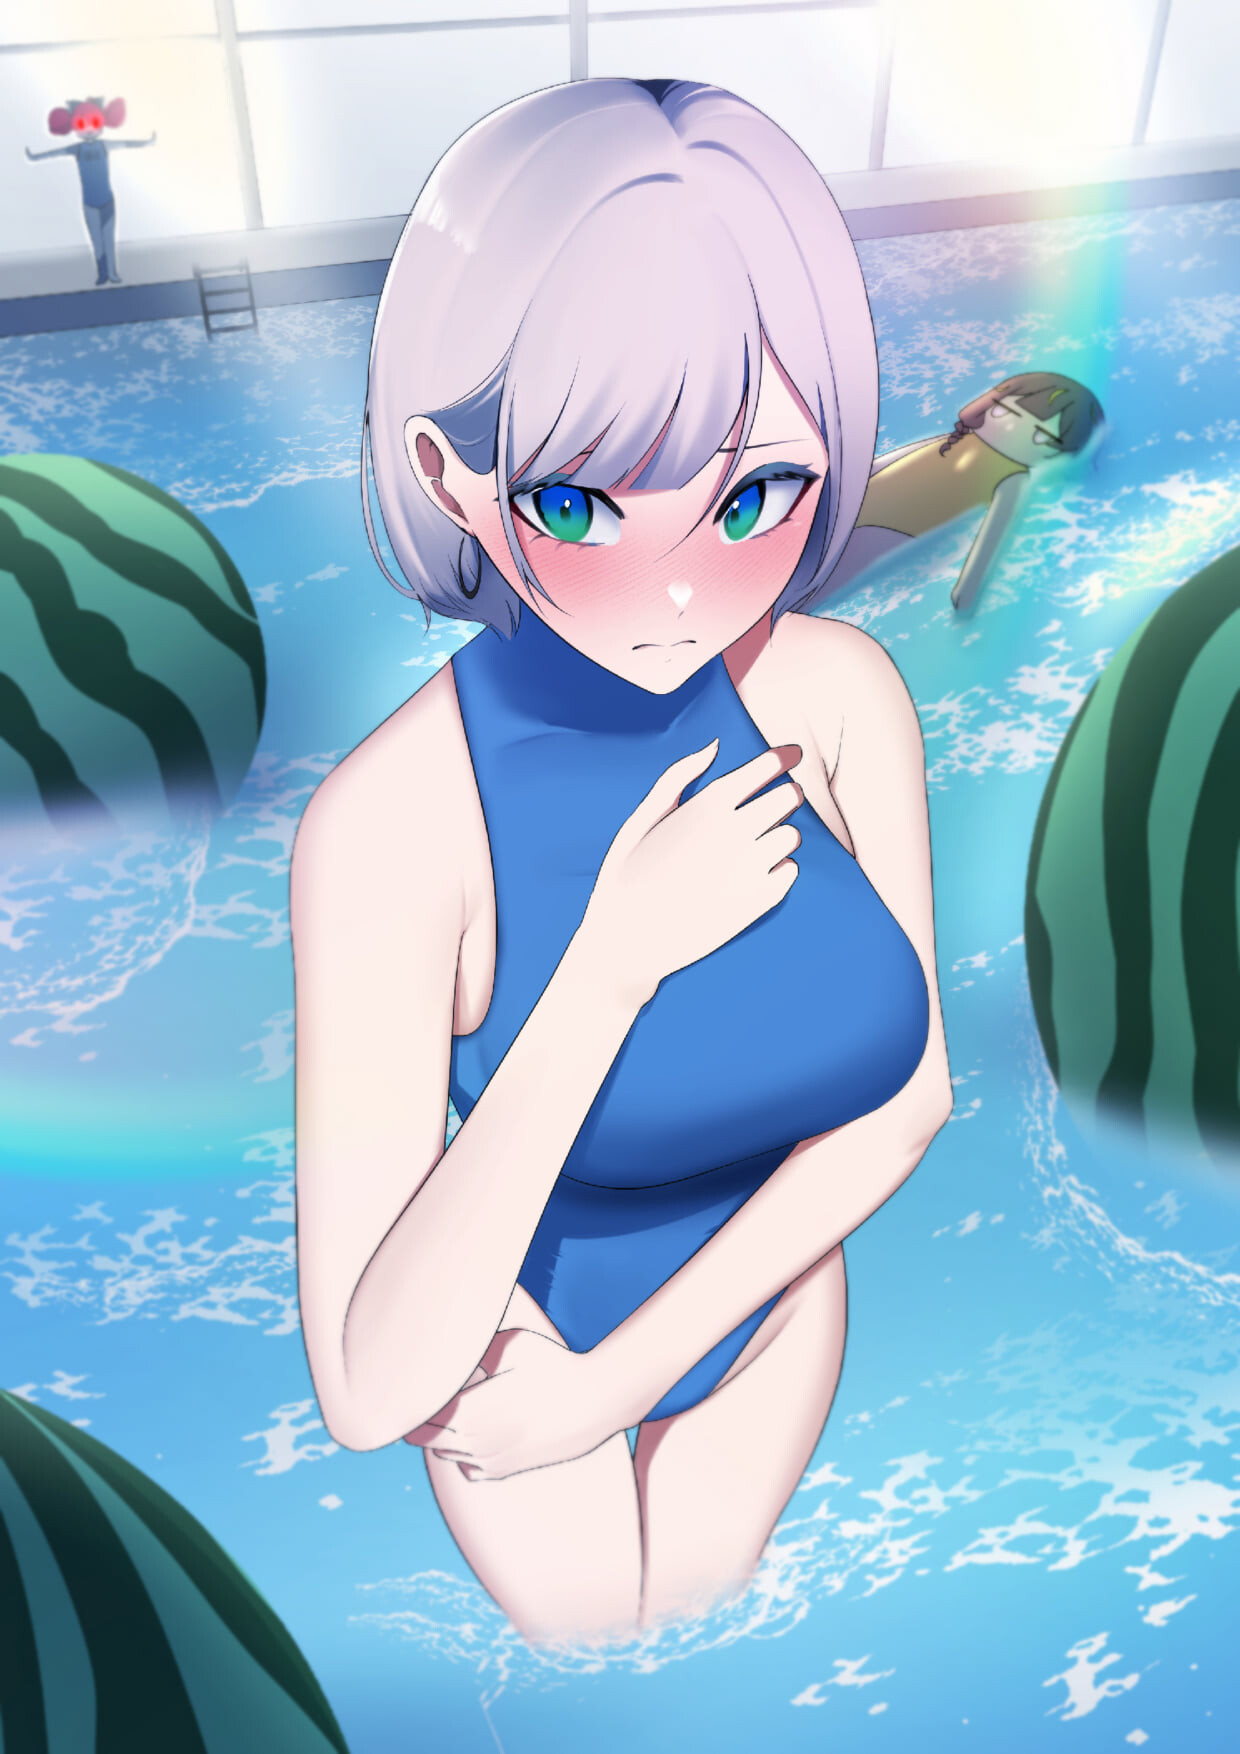 ArtStation - Swimsuit Anime Girl